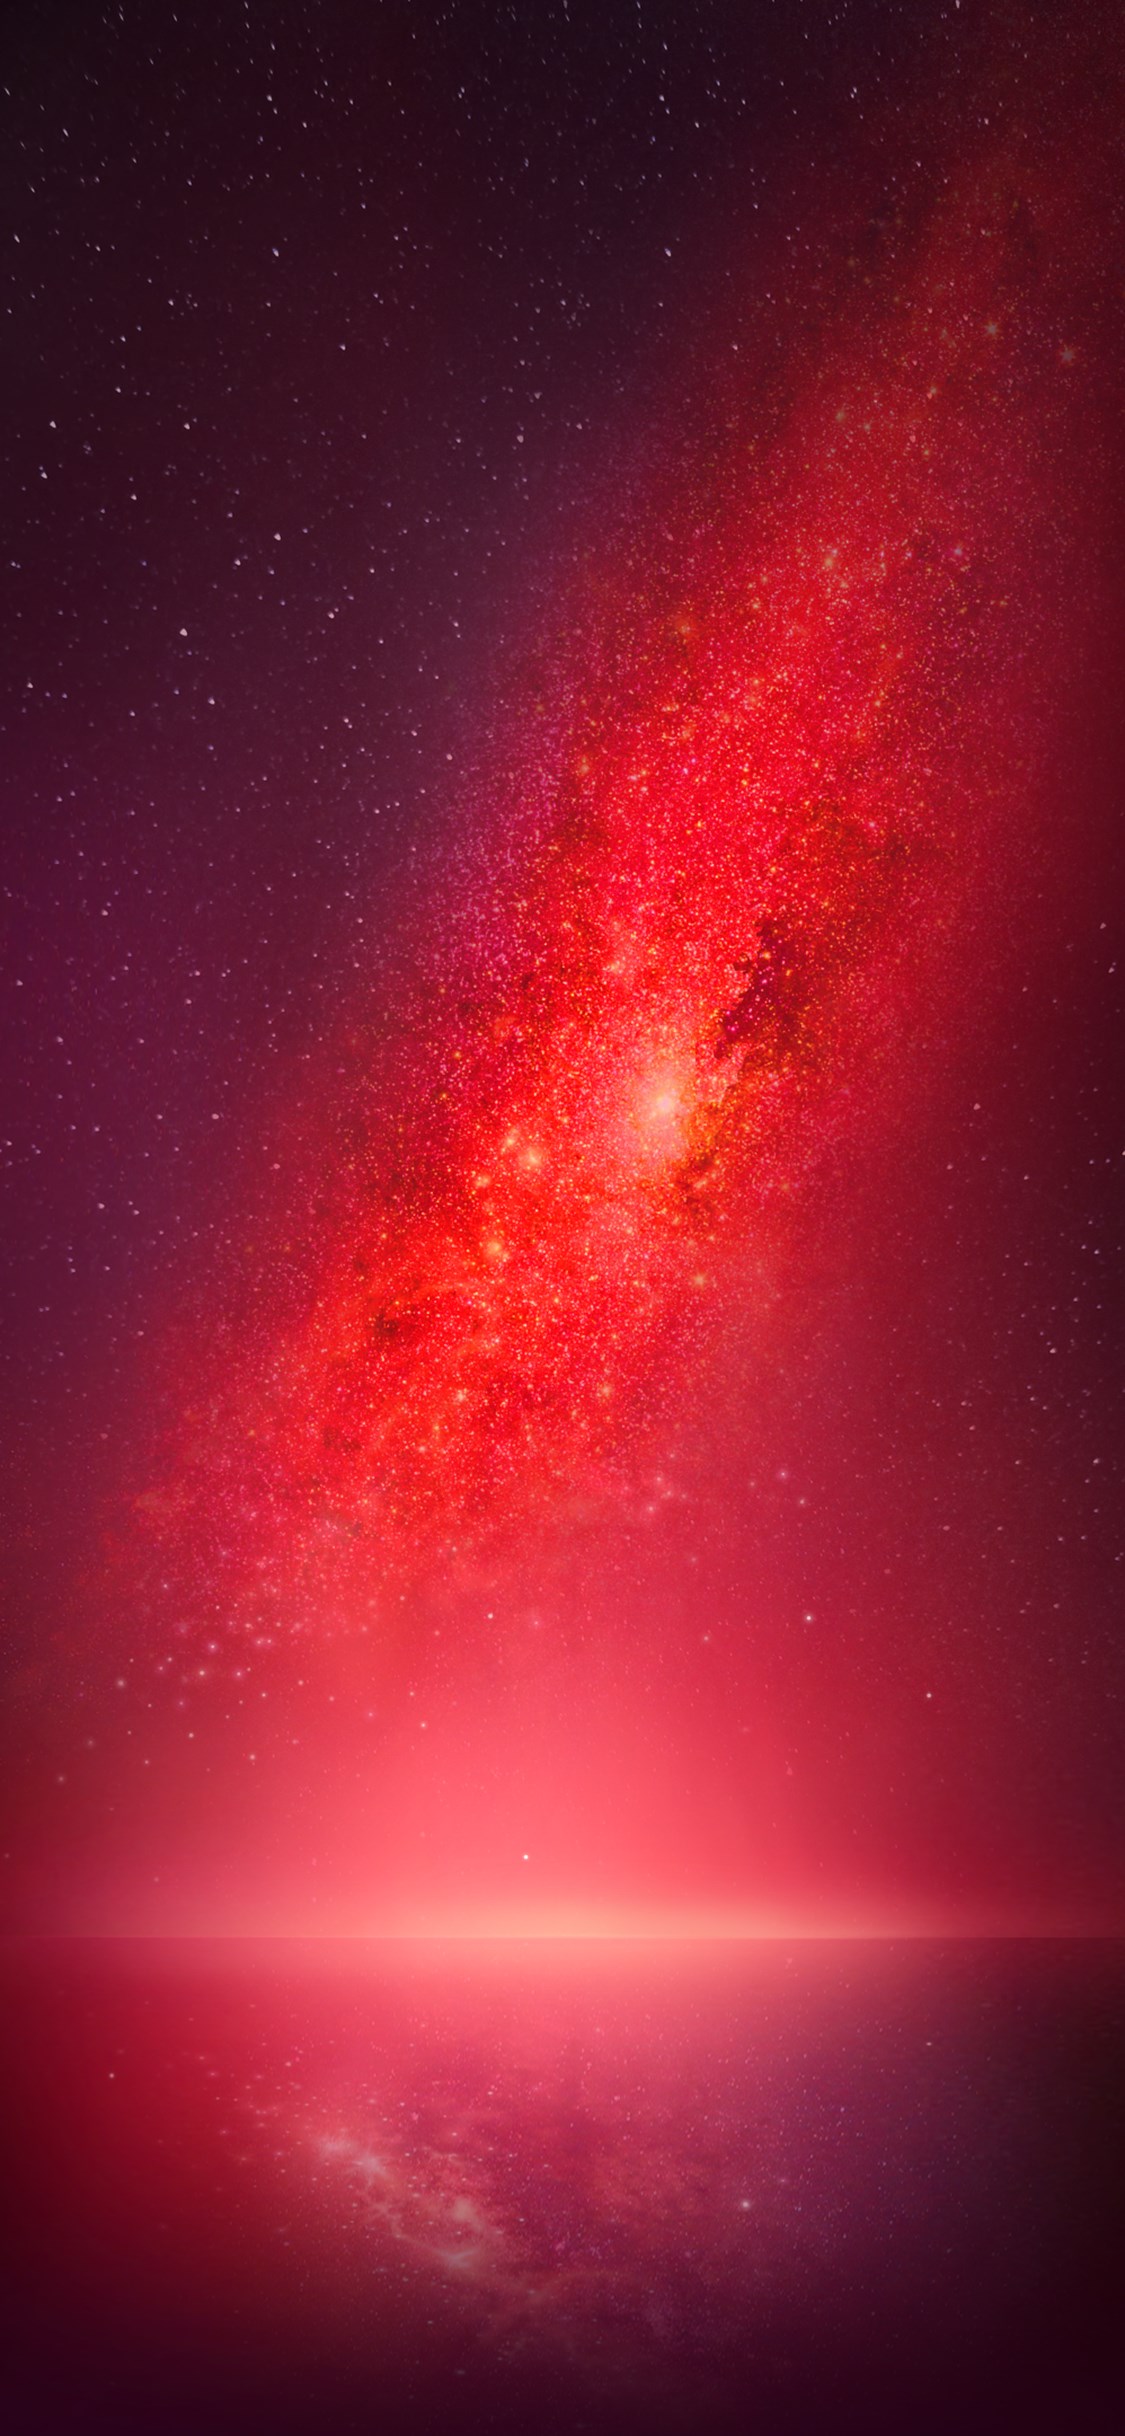 fond d'écran photos hd,rouge,ciel,rose,atmosphère,objet astronomique